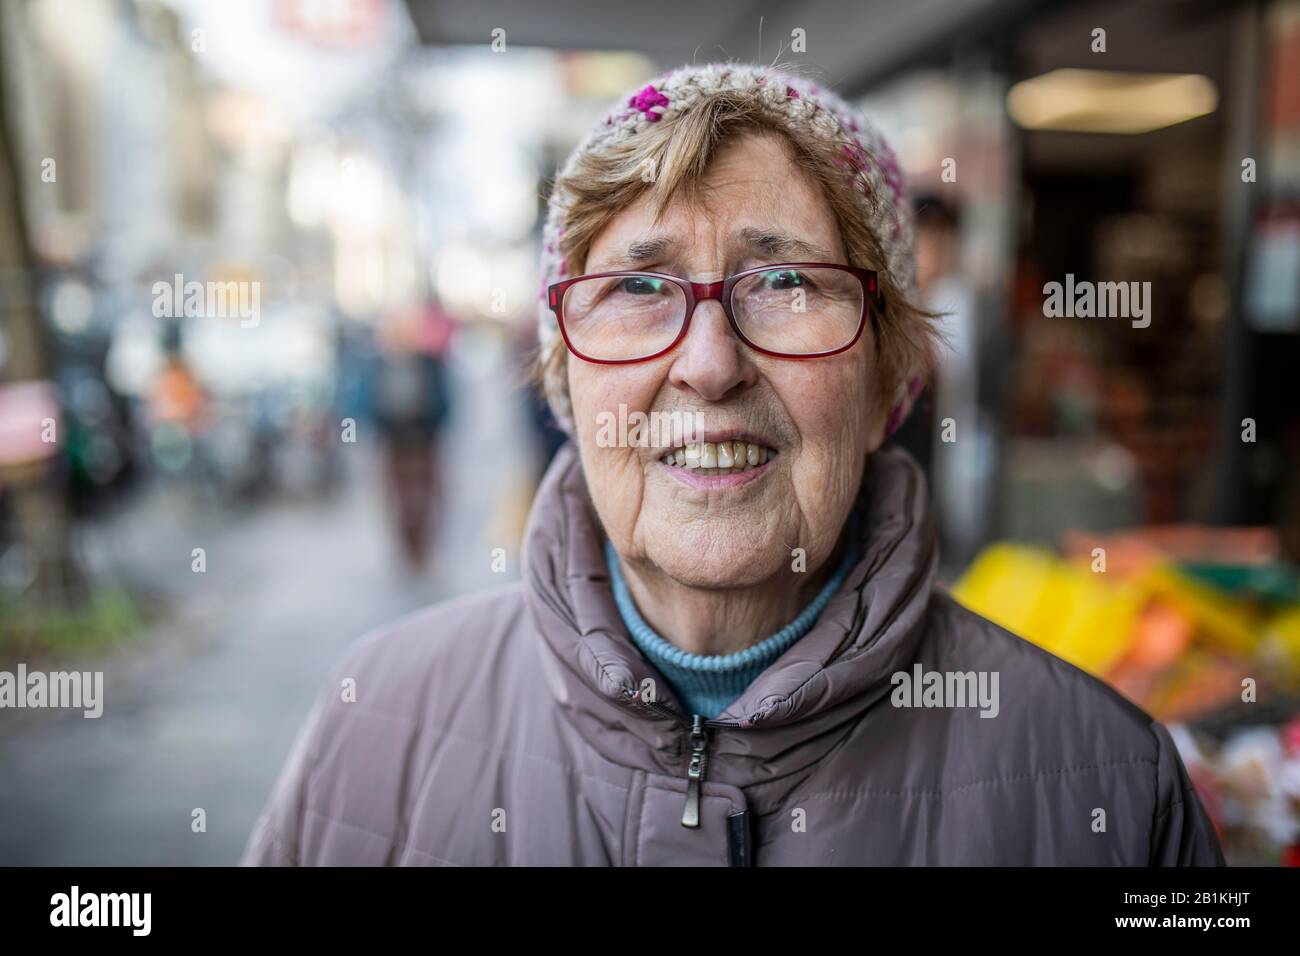 Senior Citizen con occhiali e berretto, ritratto in città, Colonia, Renania Settentrionale-Vestfalia, Germania Foto Stock